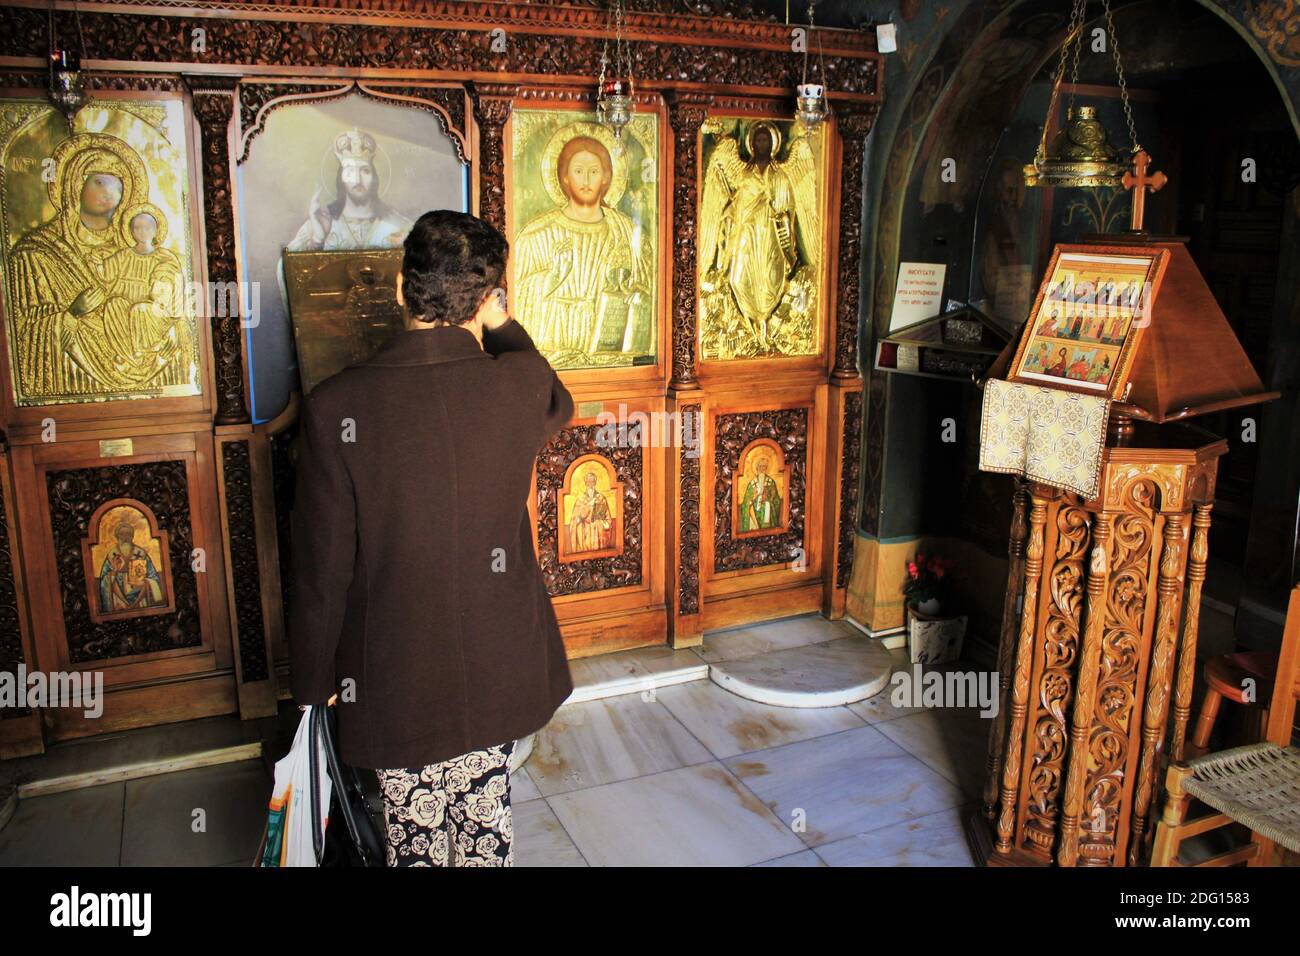 Pellegrini che pregano all'interno di una chiesa ortodossa greca ad Atene, Grecia - Marzo 12 2020. Foto Stock